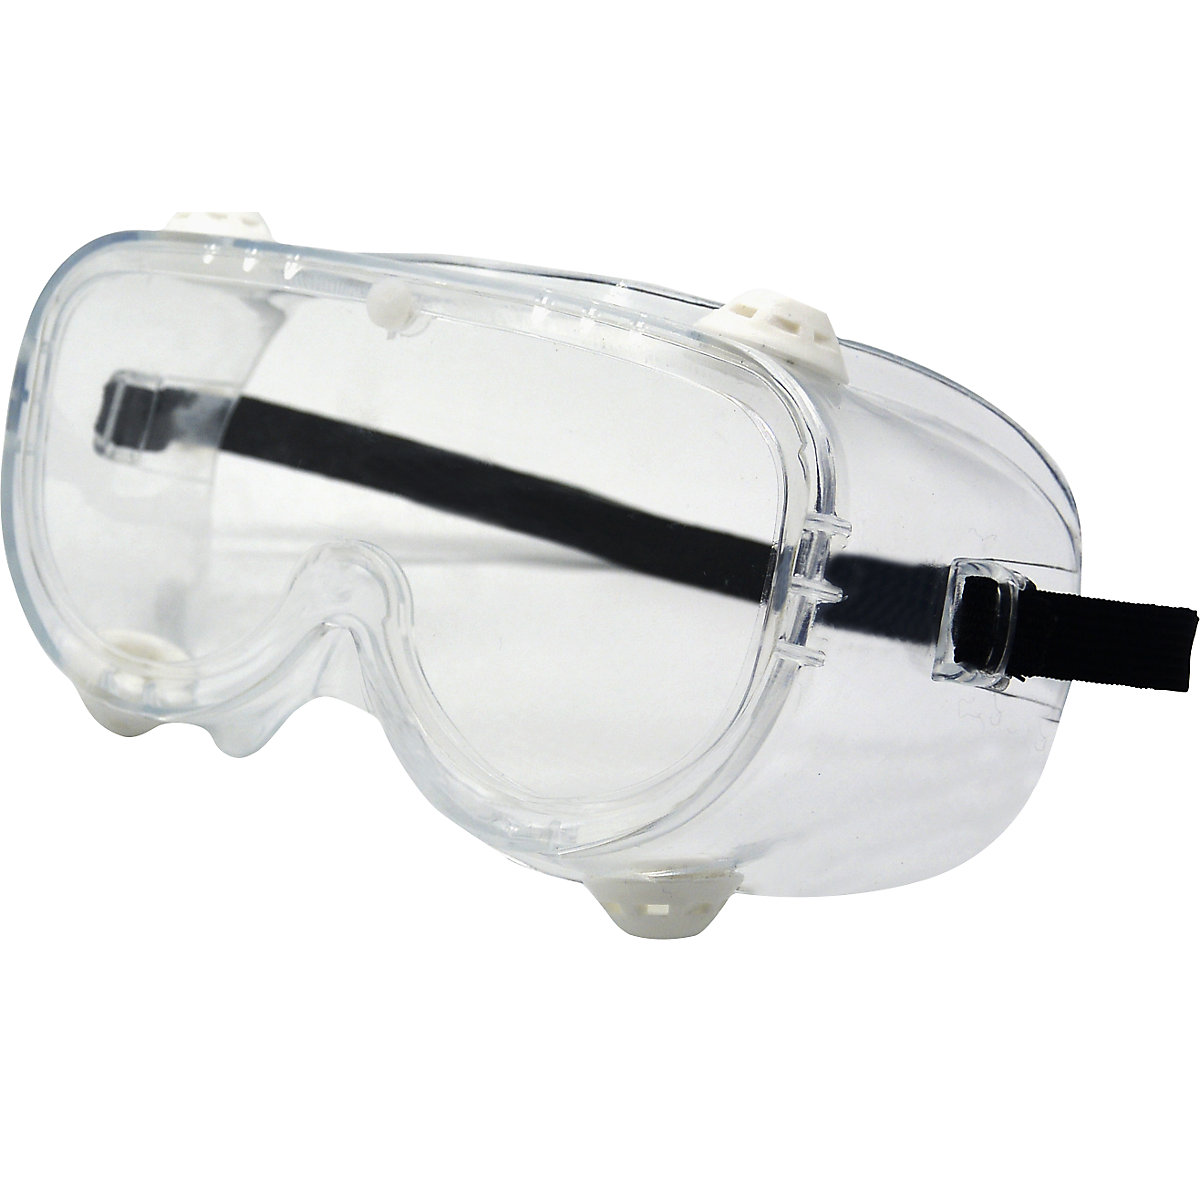 Kristallklar Flexibles Kopfband Schutzbrille gemäß EN166 Sicherheitsbrille Kratzfest 2 Antibeschlag